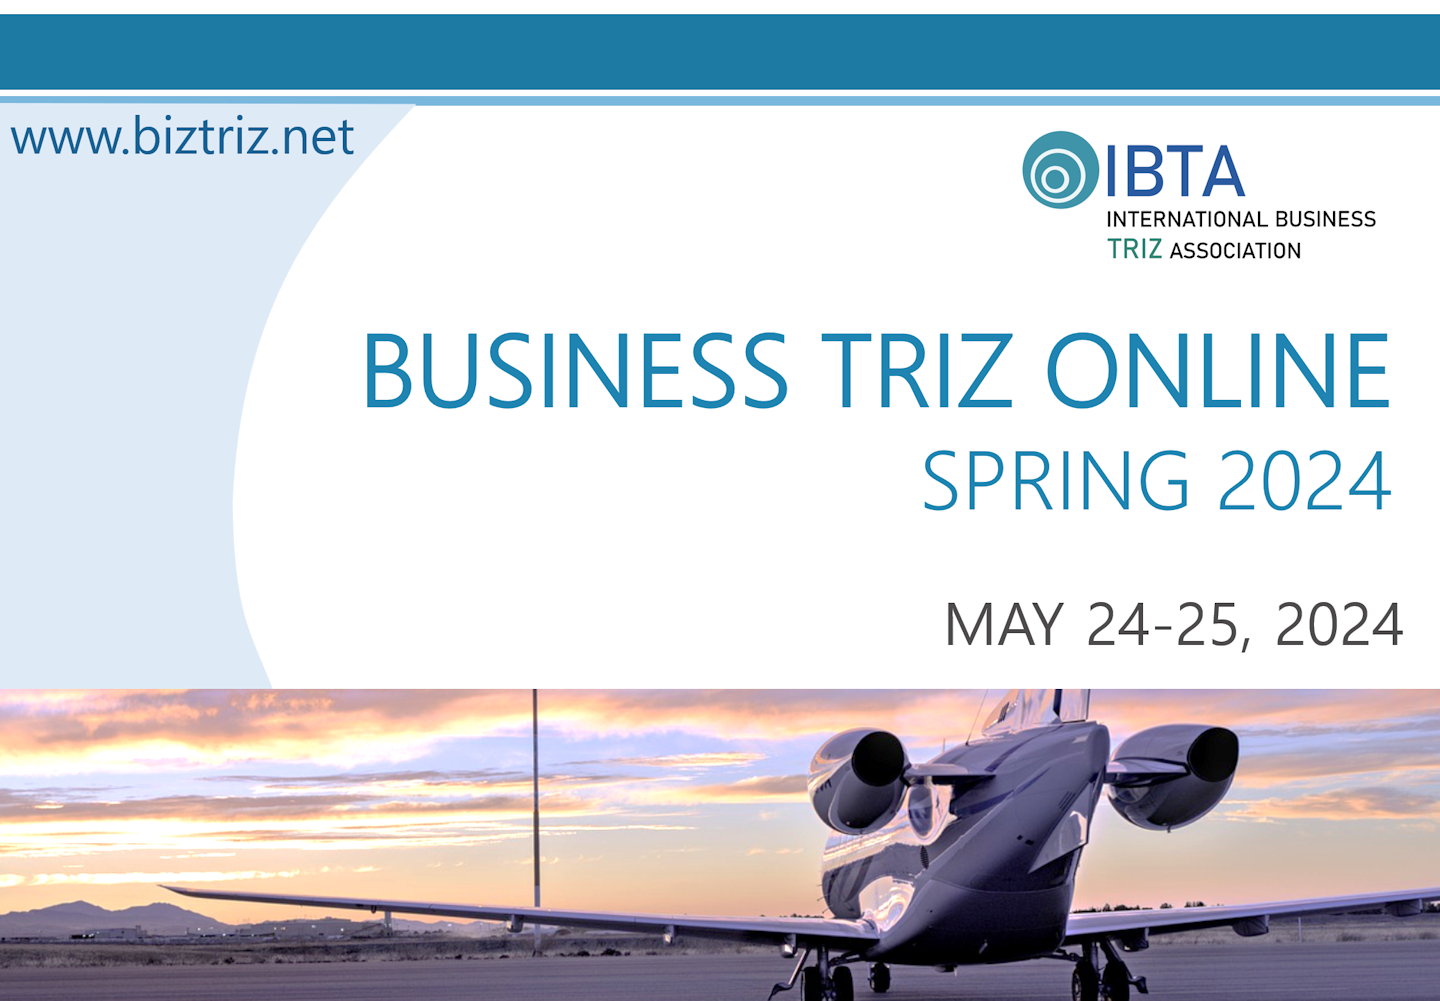 "BUSINESS TRIZ ONLINE - SPRING 2024" Conference